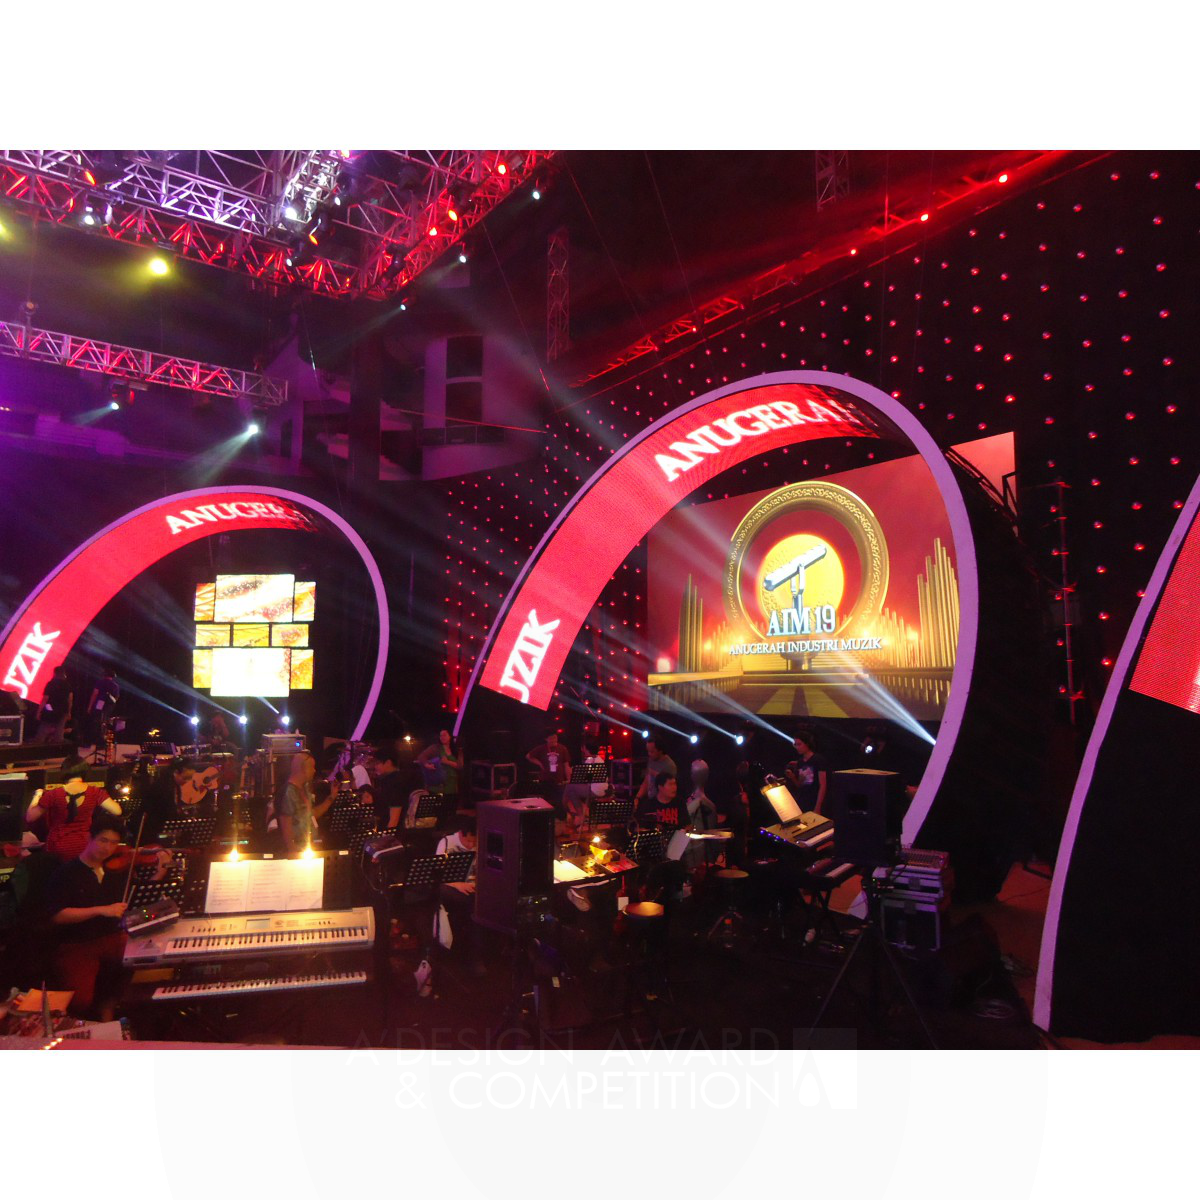 Anugerah Industri Muzik, Malaysia <b>Musical Award show  